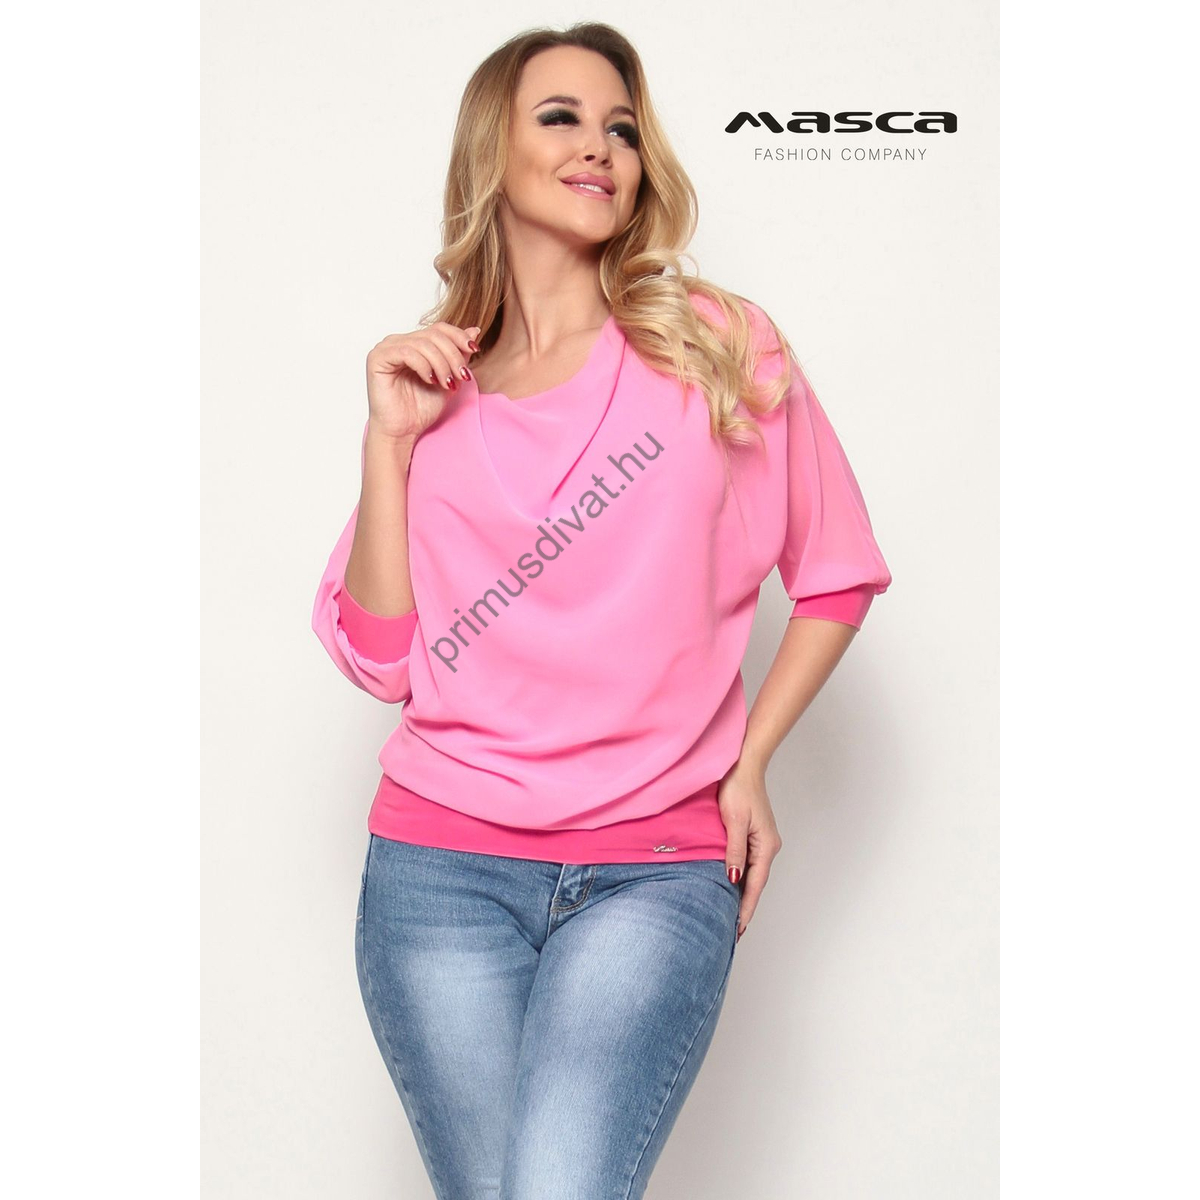 Masca Fashion kámzsanyakú, háromnegyedes ujjú, testrészén alábélelt rózsaszín muszlin laza felső, ujján és csípőjén rugalmas passzéval